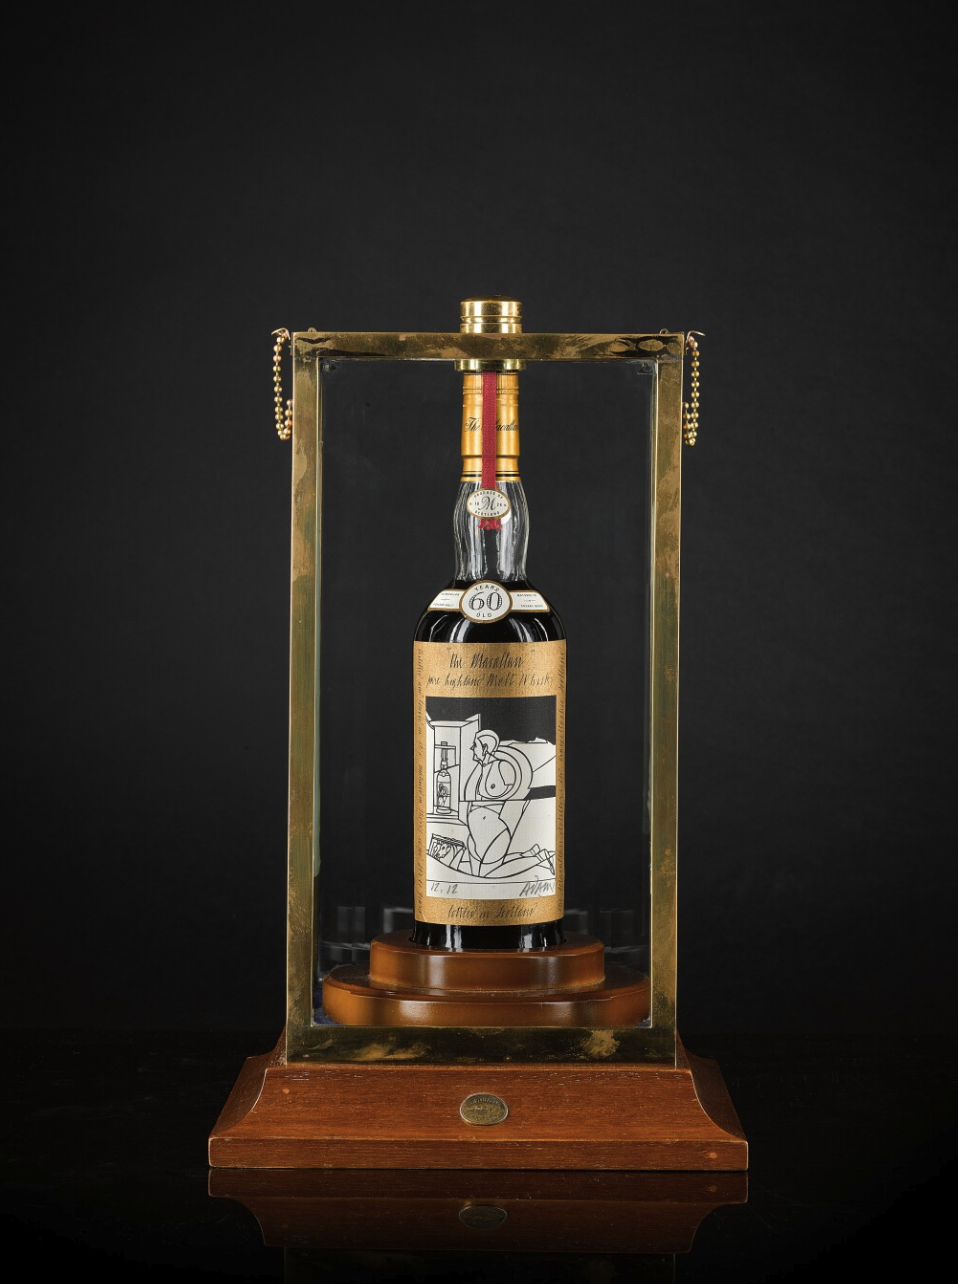 Nuovo record per un liquore all’asta: un whisky Macallan con etichetta di Valerio Adami venduto per 2,6 milioni di dollari